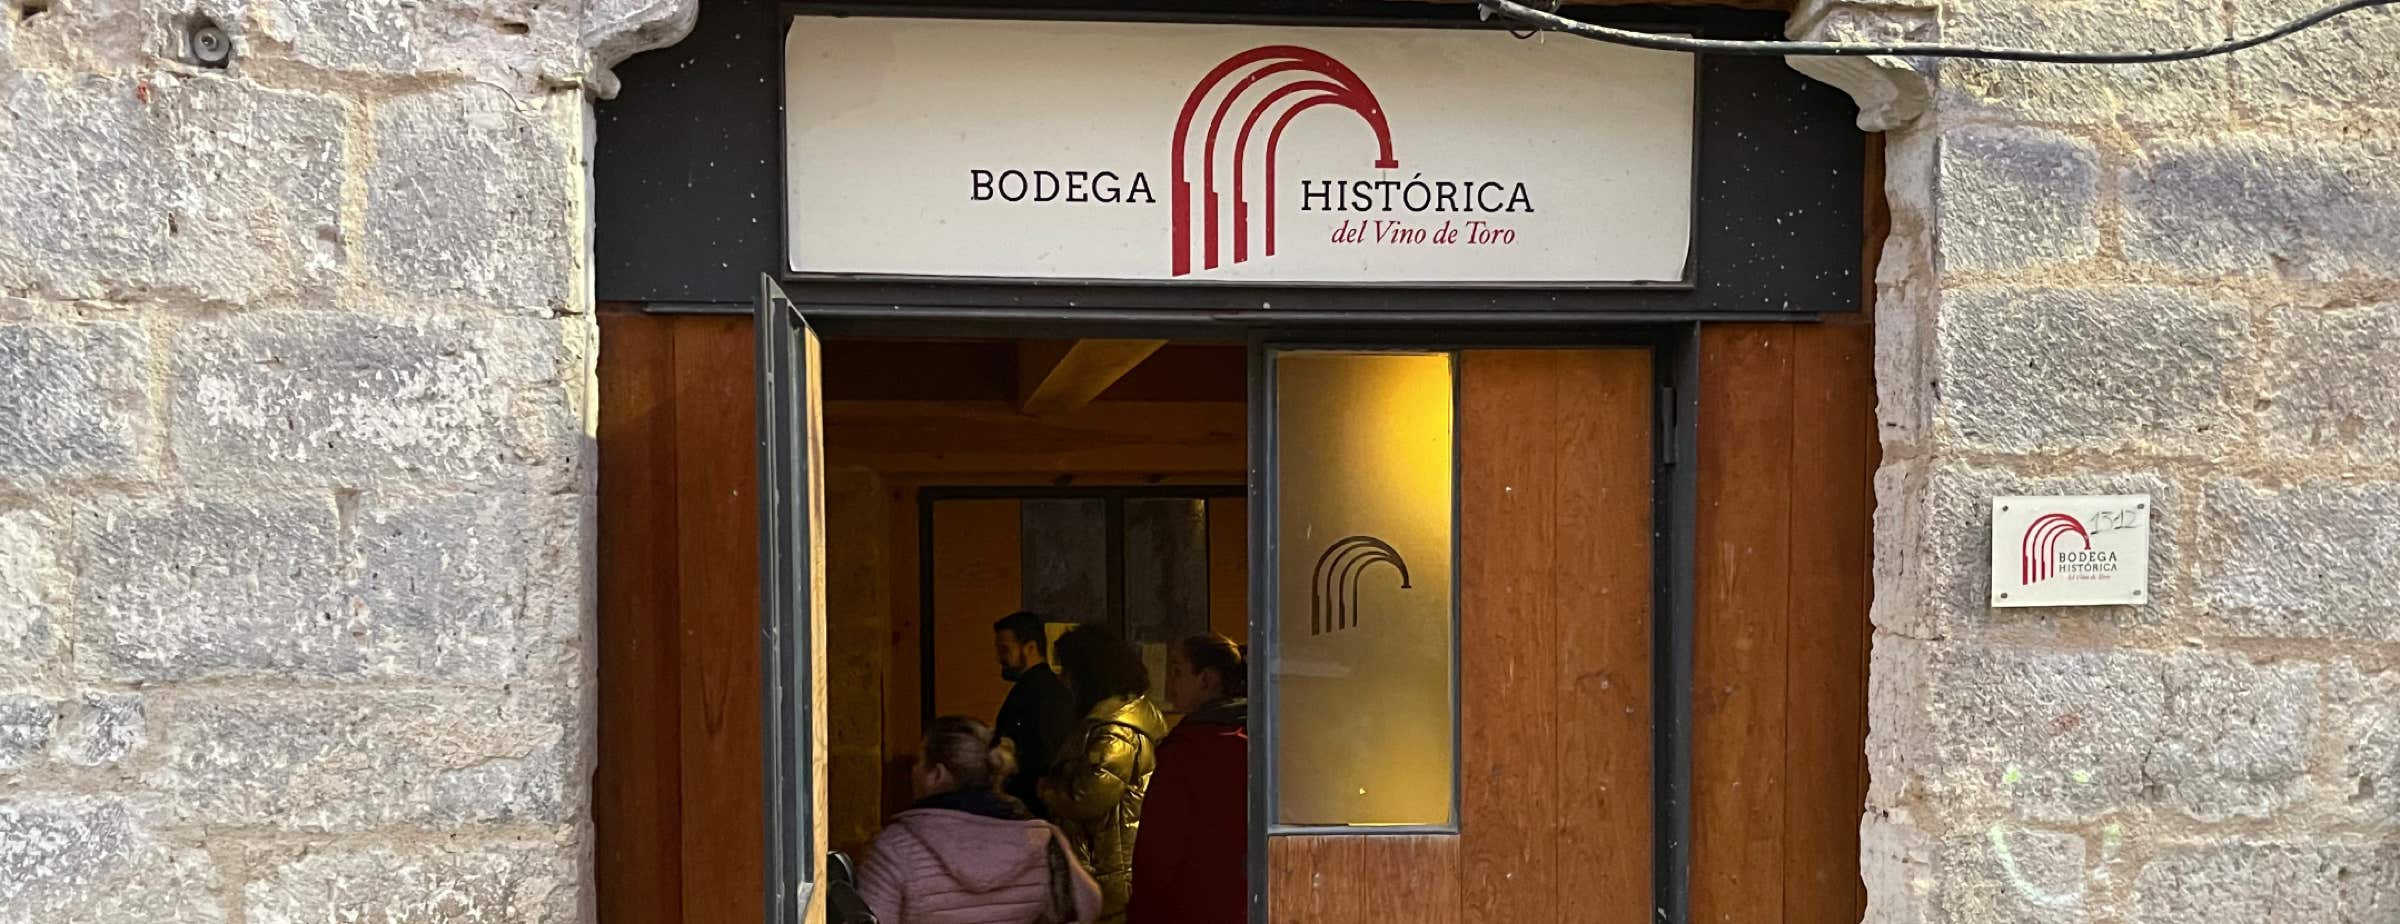 Bild des Eingangs der Bodega Histórica. Der Eingang ist eine Holztür. Über dem Eingang ist ein Schild mit der Aufschrift "Bodega Histórica del Vino de Toro". Die Tür ist offen, und man kann Menschen im Inneren sehen. Neben der Tür sind Teile der grauen Steinfassade zu sehen.